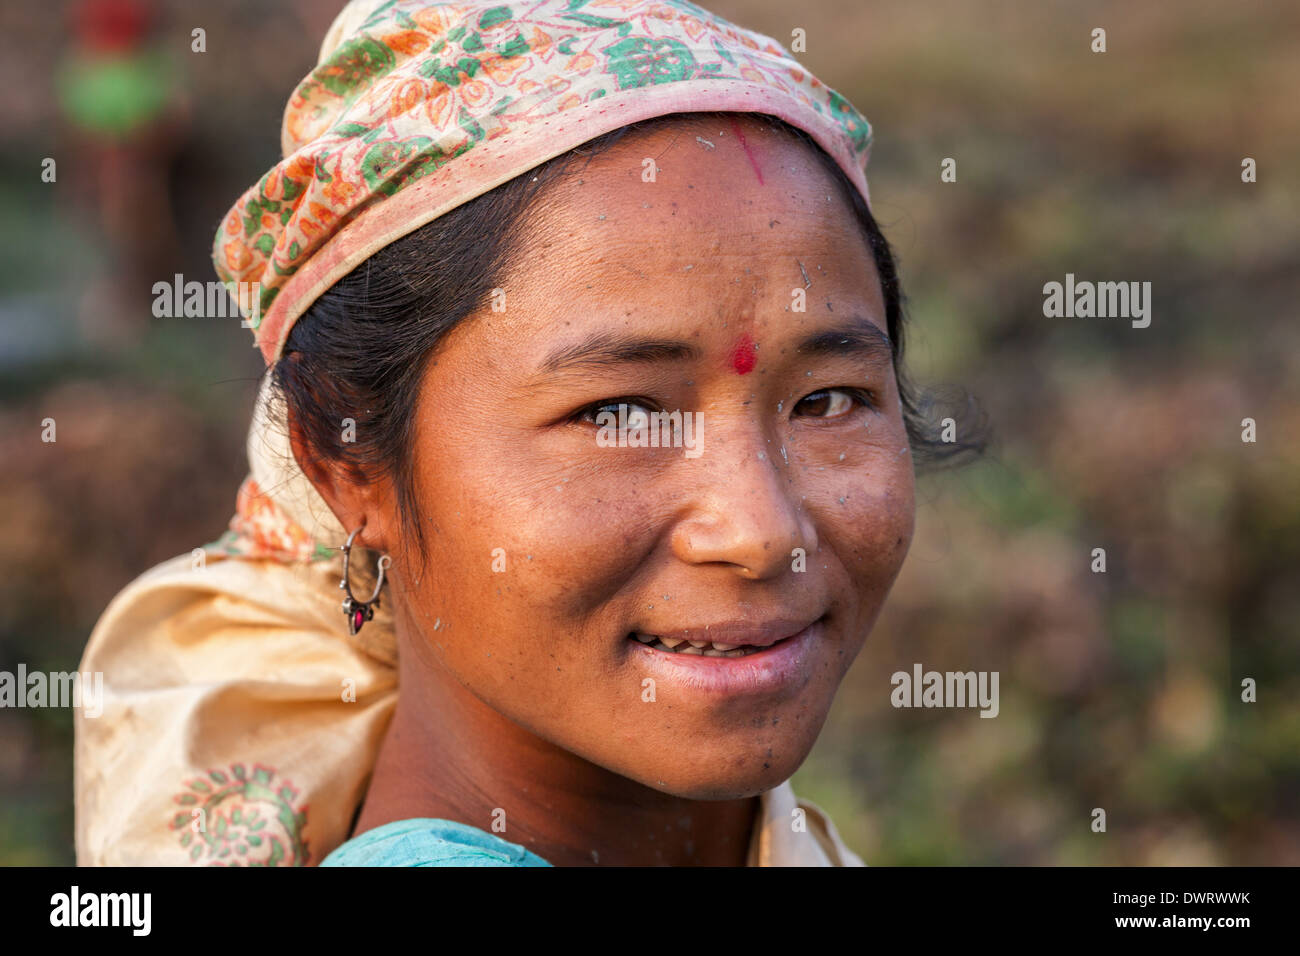 Smiling woman pêche avec écharpe de la tribu Mishing portant l'écharpe, l'île de Majuli, Inde Banque D'Images